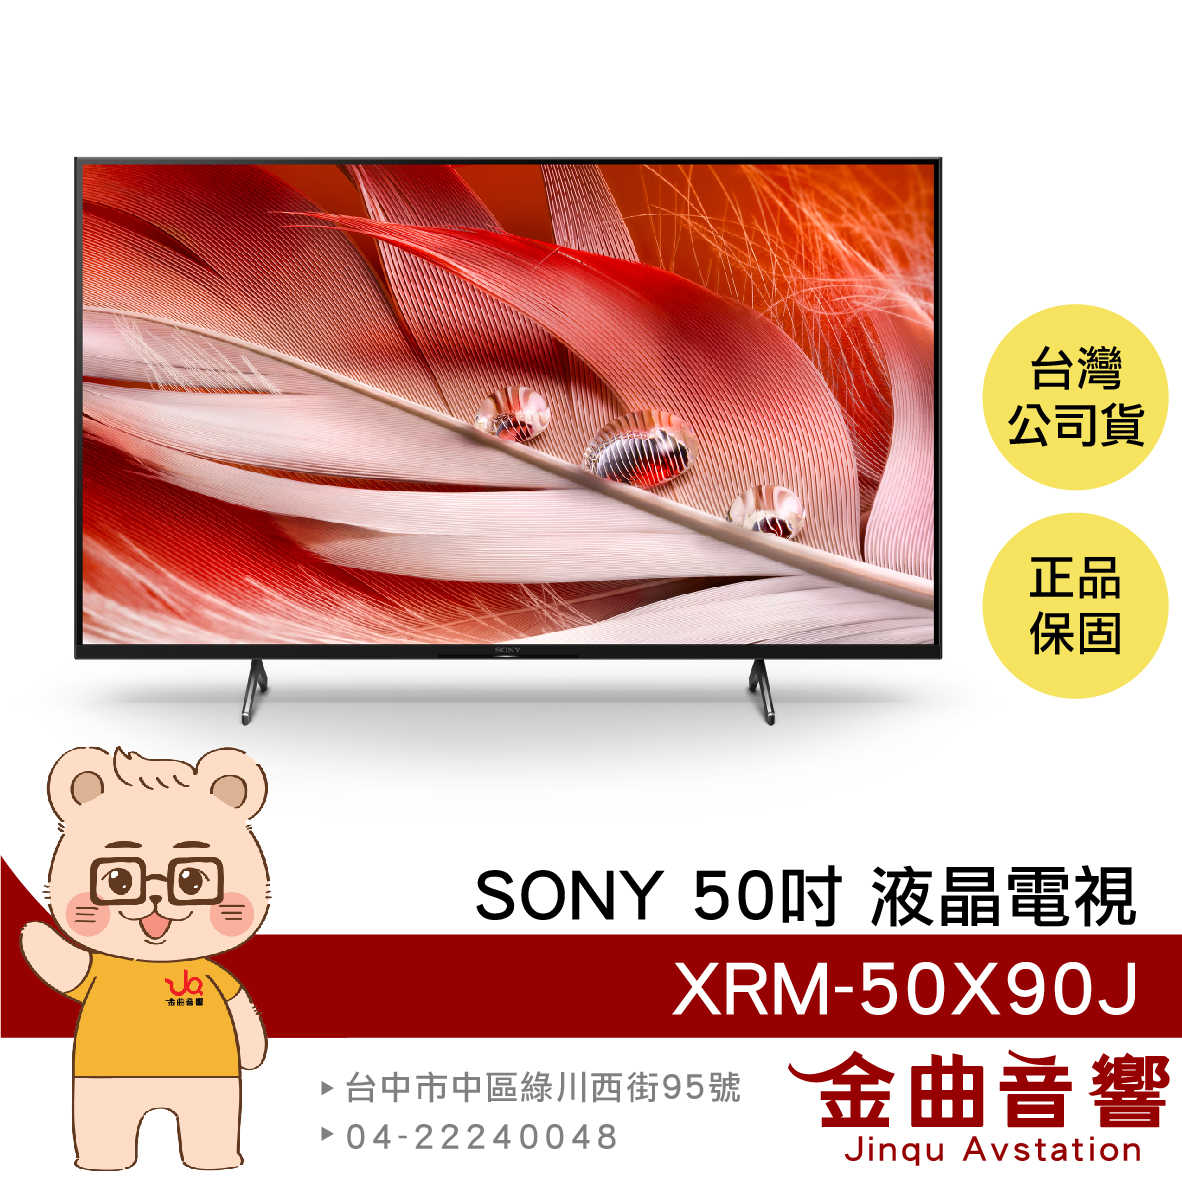 SONY 索尼 XRM-50X90J 50吋 直下式 4K HDR LCD 電視 2021 | 金曲音響